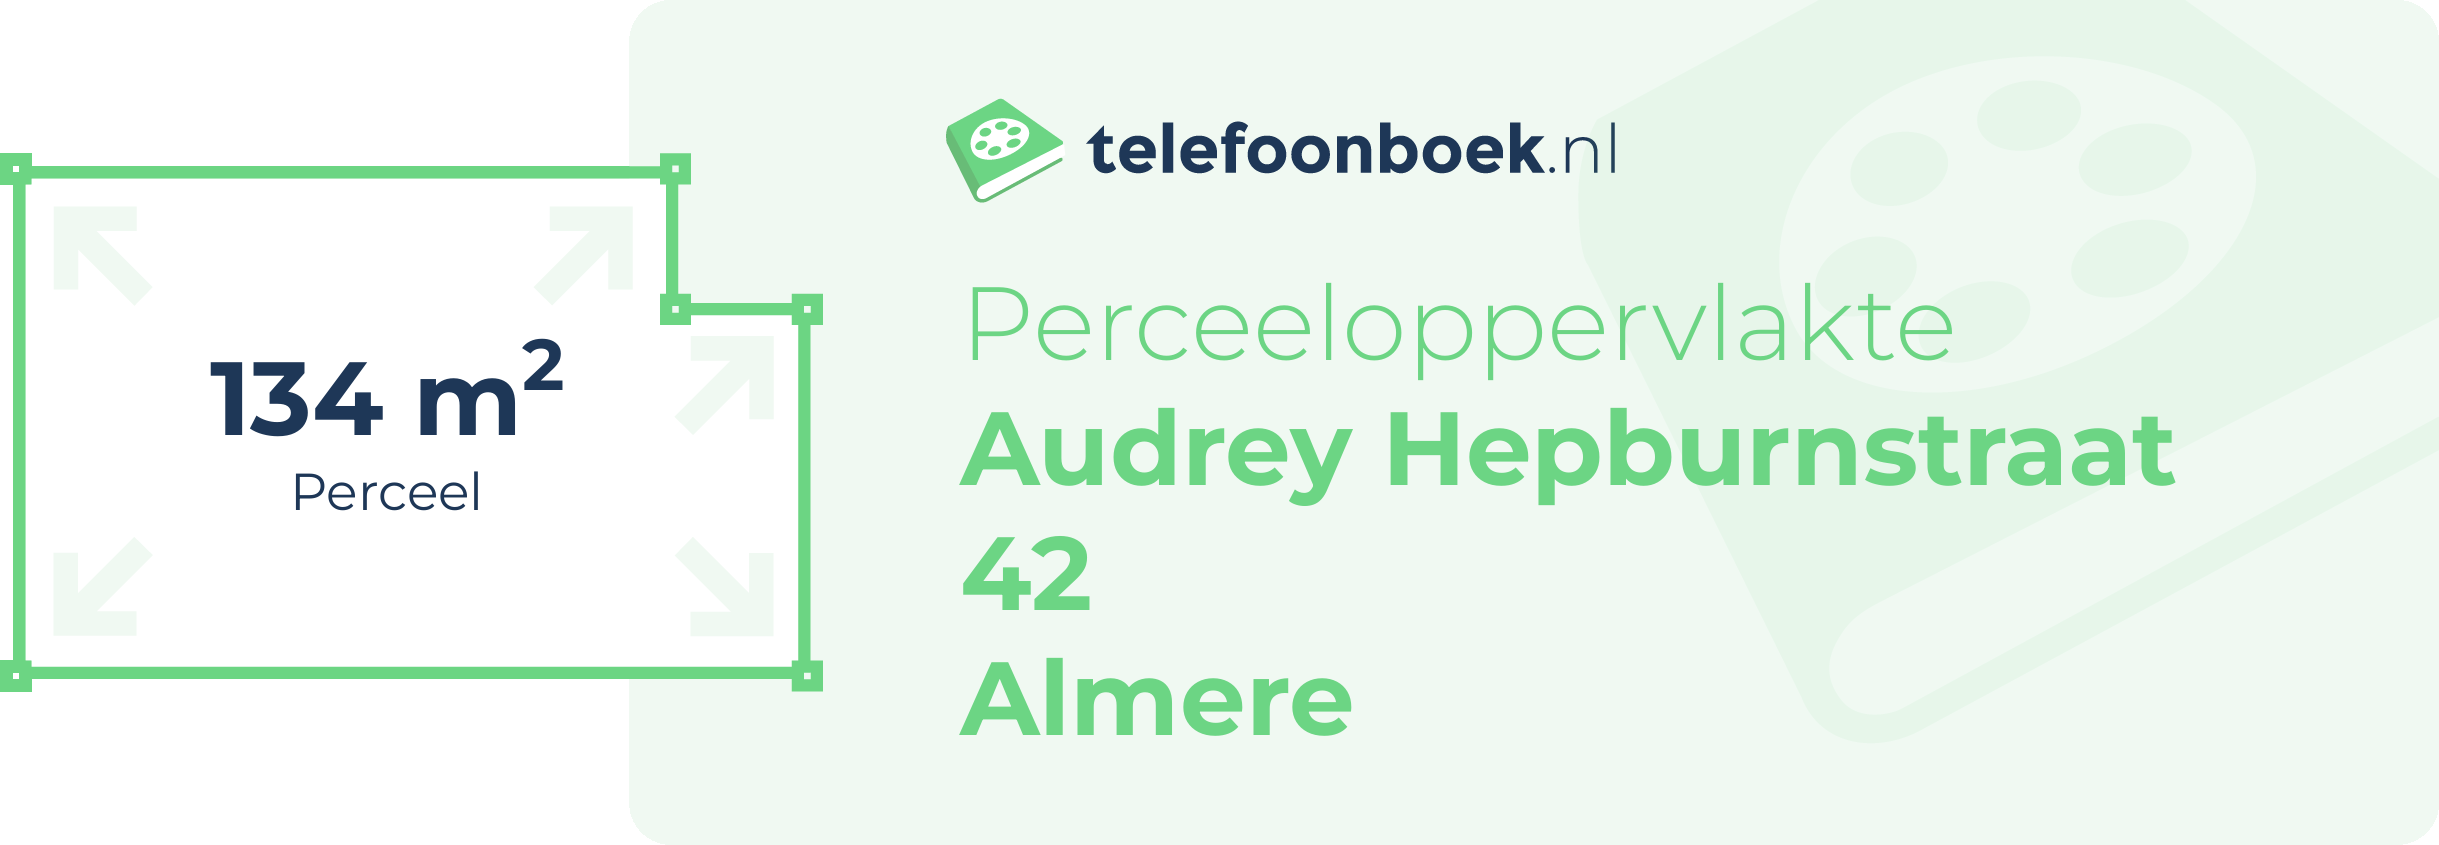 Perceeloppervlakte Audrey Hepburnstraat 42 Almere